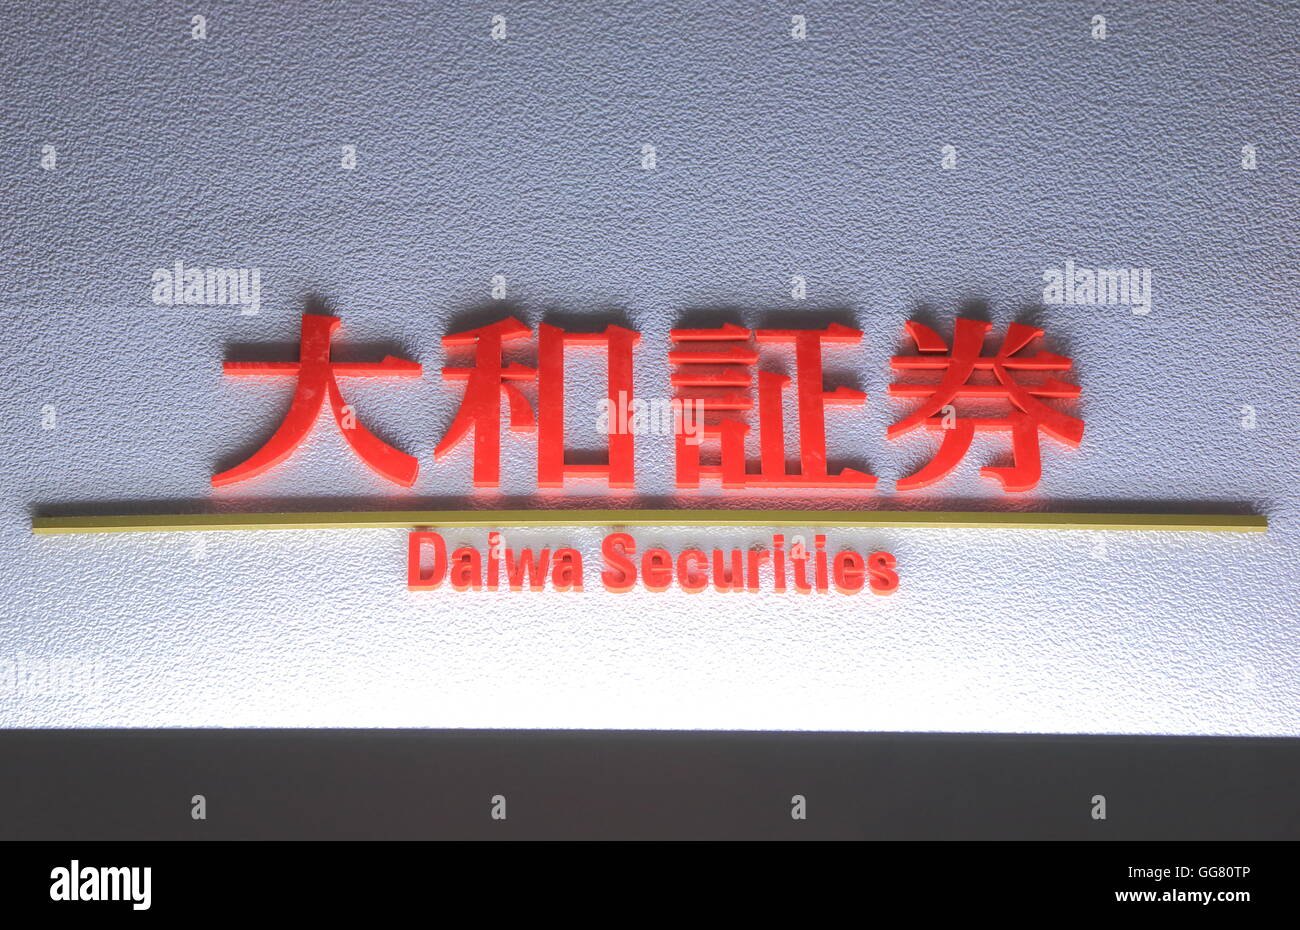 Daiwa Securities logo banco de inversión que es el segundo más grande de corretaje de valores. Foto de stock